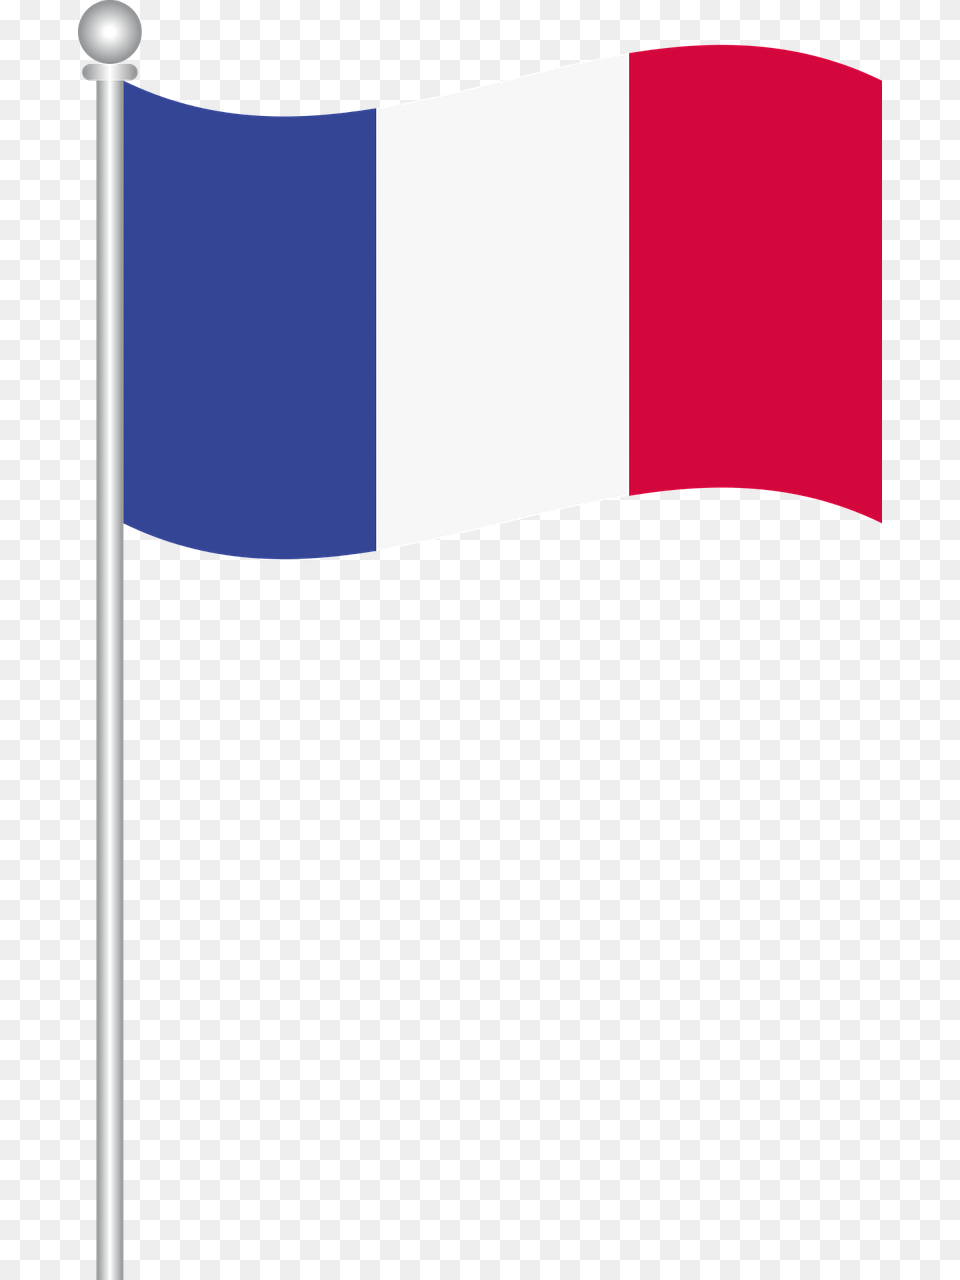 France Flag Of France World Flags France Flag Vector, France Flag Png Image